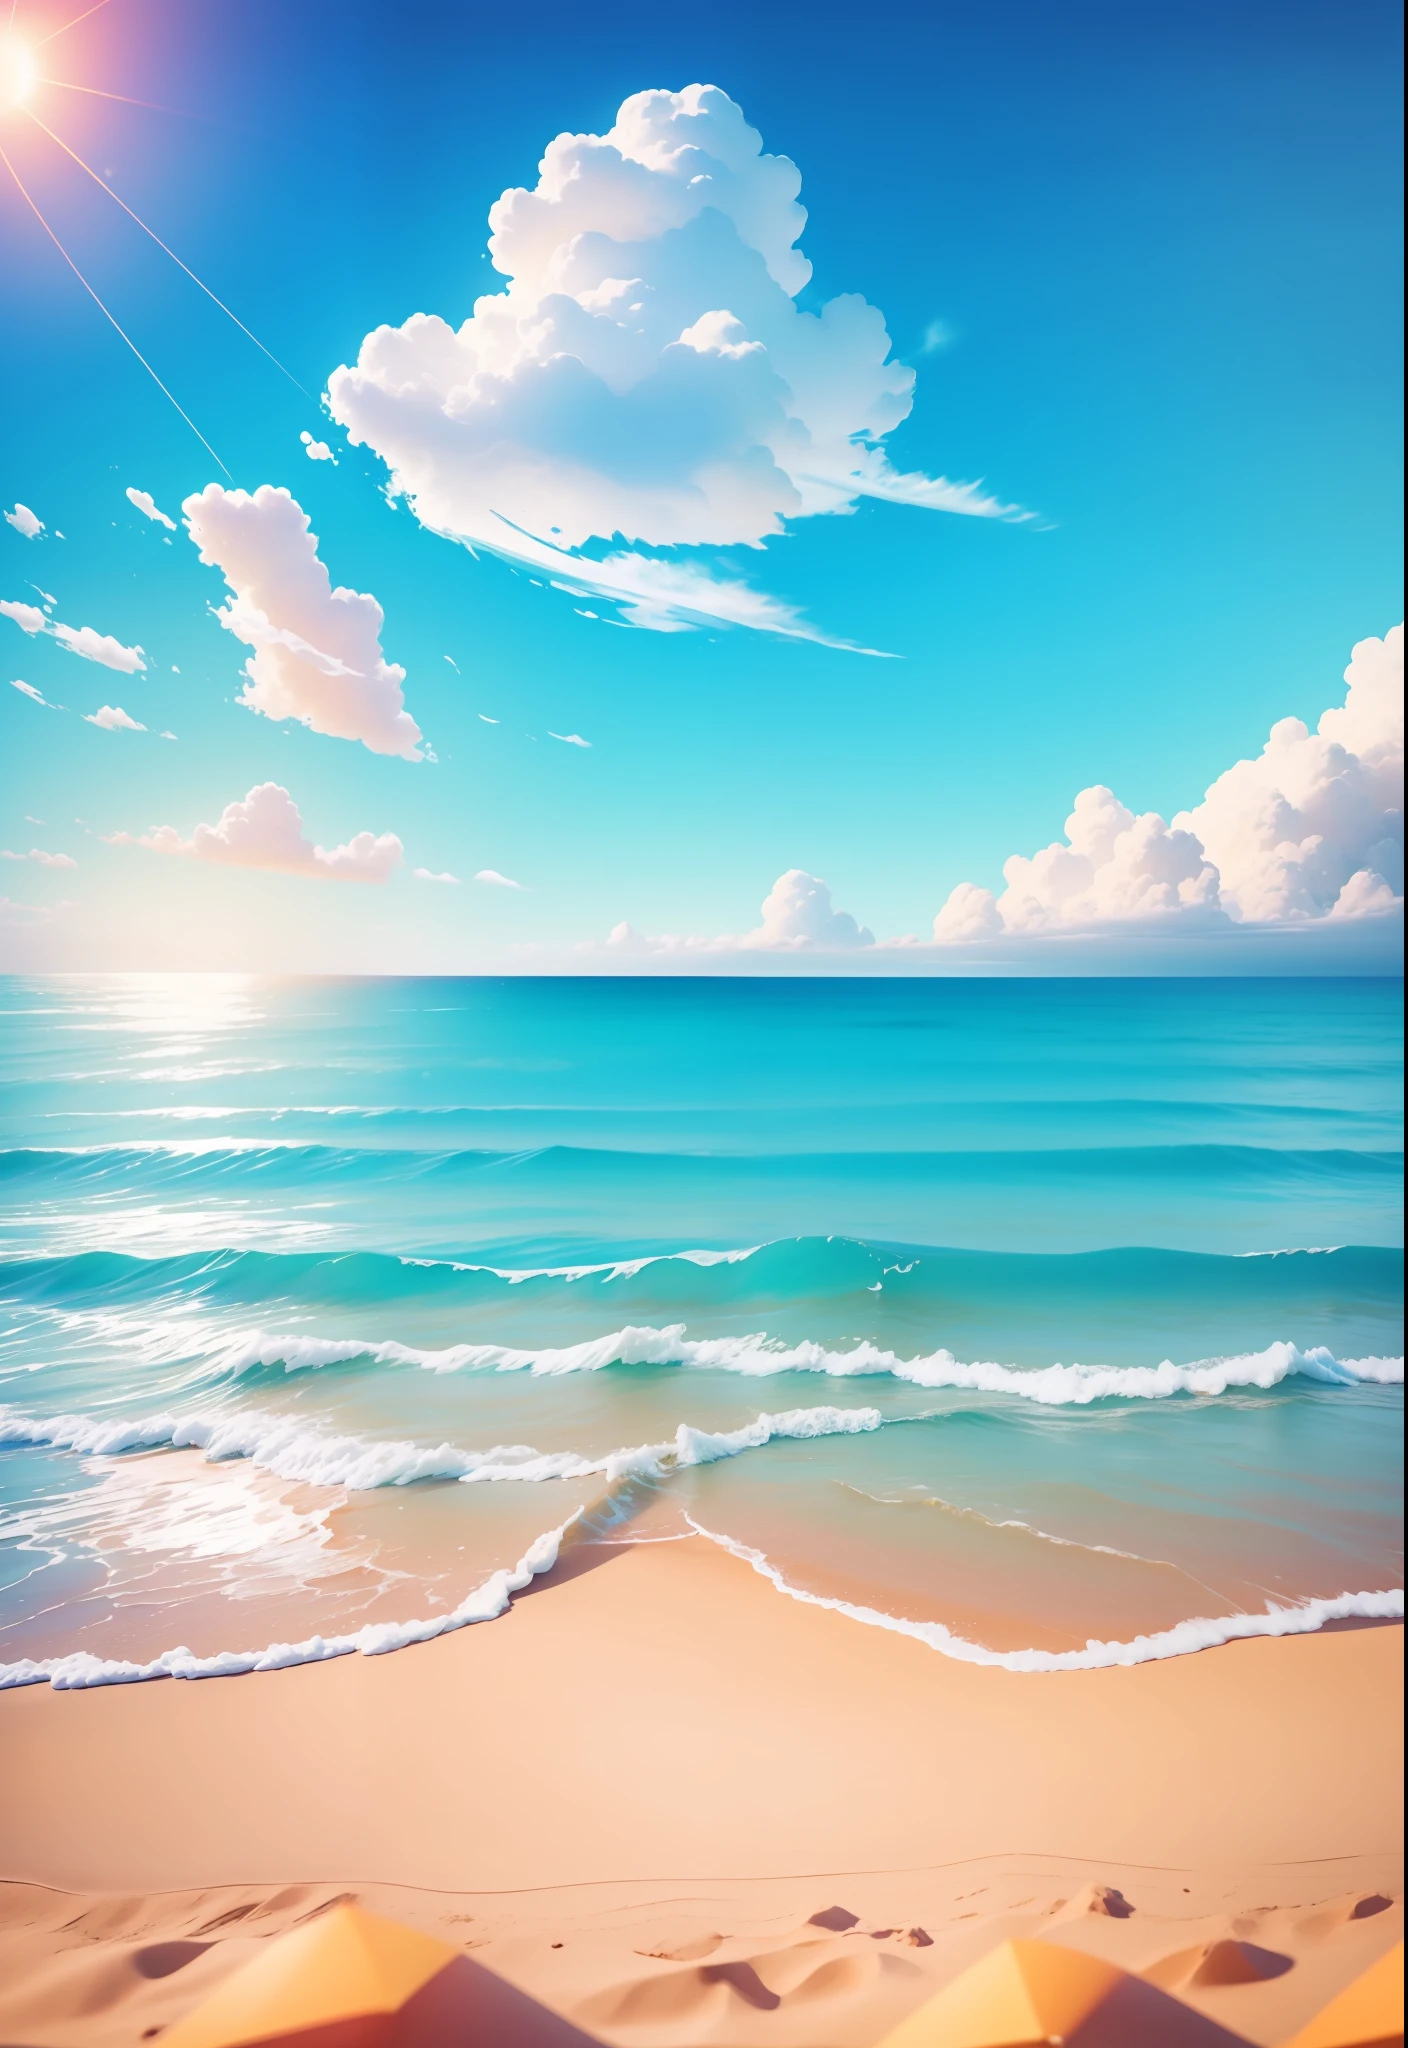 夏の海辺, ビーチ, 晴れ weather, 晴天, 晴れ, カラフル, 楽しく幸せな夏休み, シンプルな絵, 閉じる, 輝く太陽, 遠くの波, 視覚的なインパクト, 3Dドリームワークススタイル, 視点は正方形です